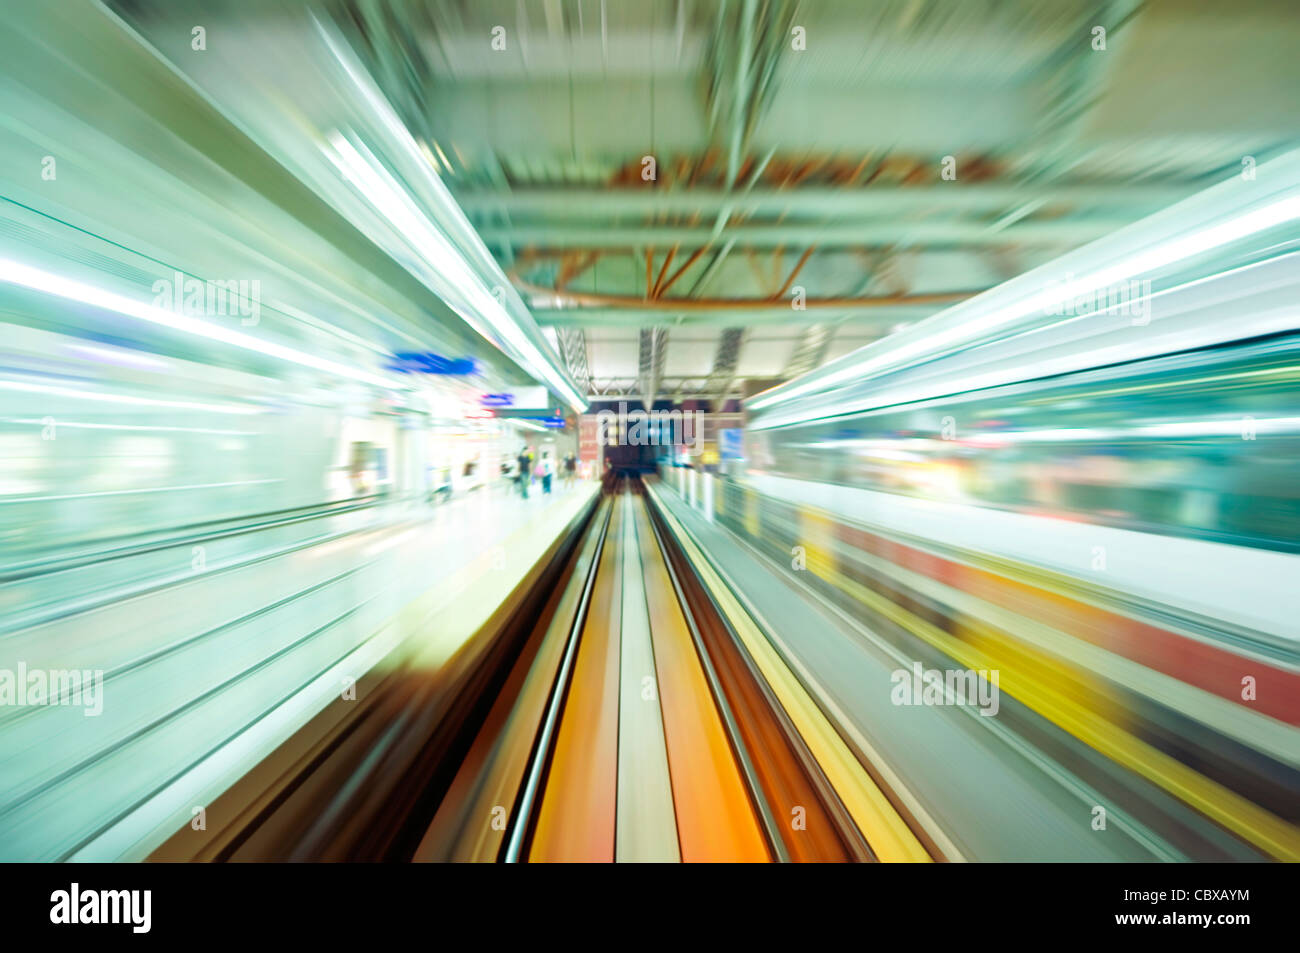 Résumé de fast train station with motion blur Banque D'Images